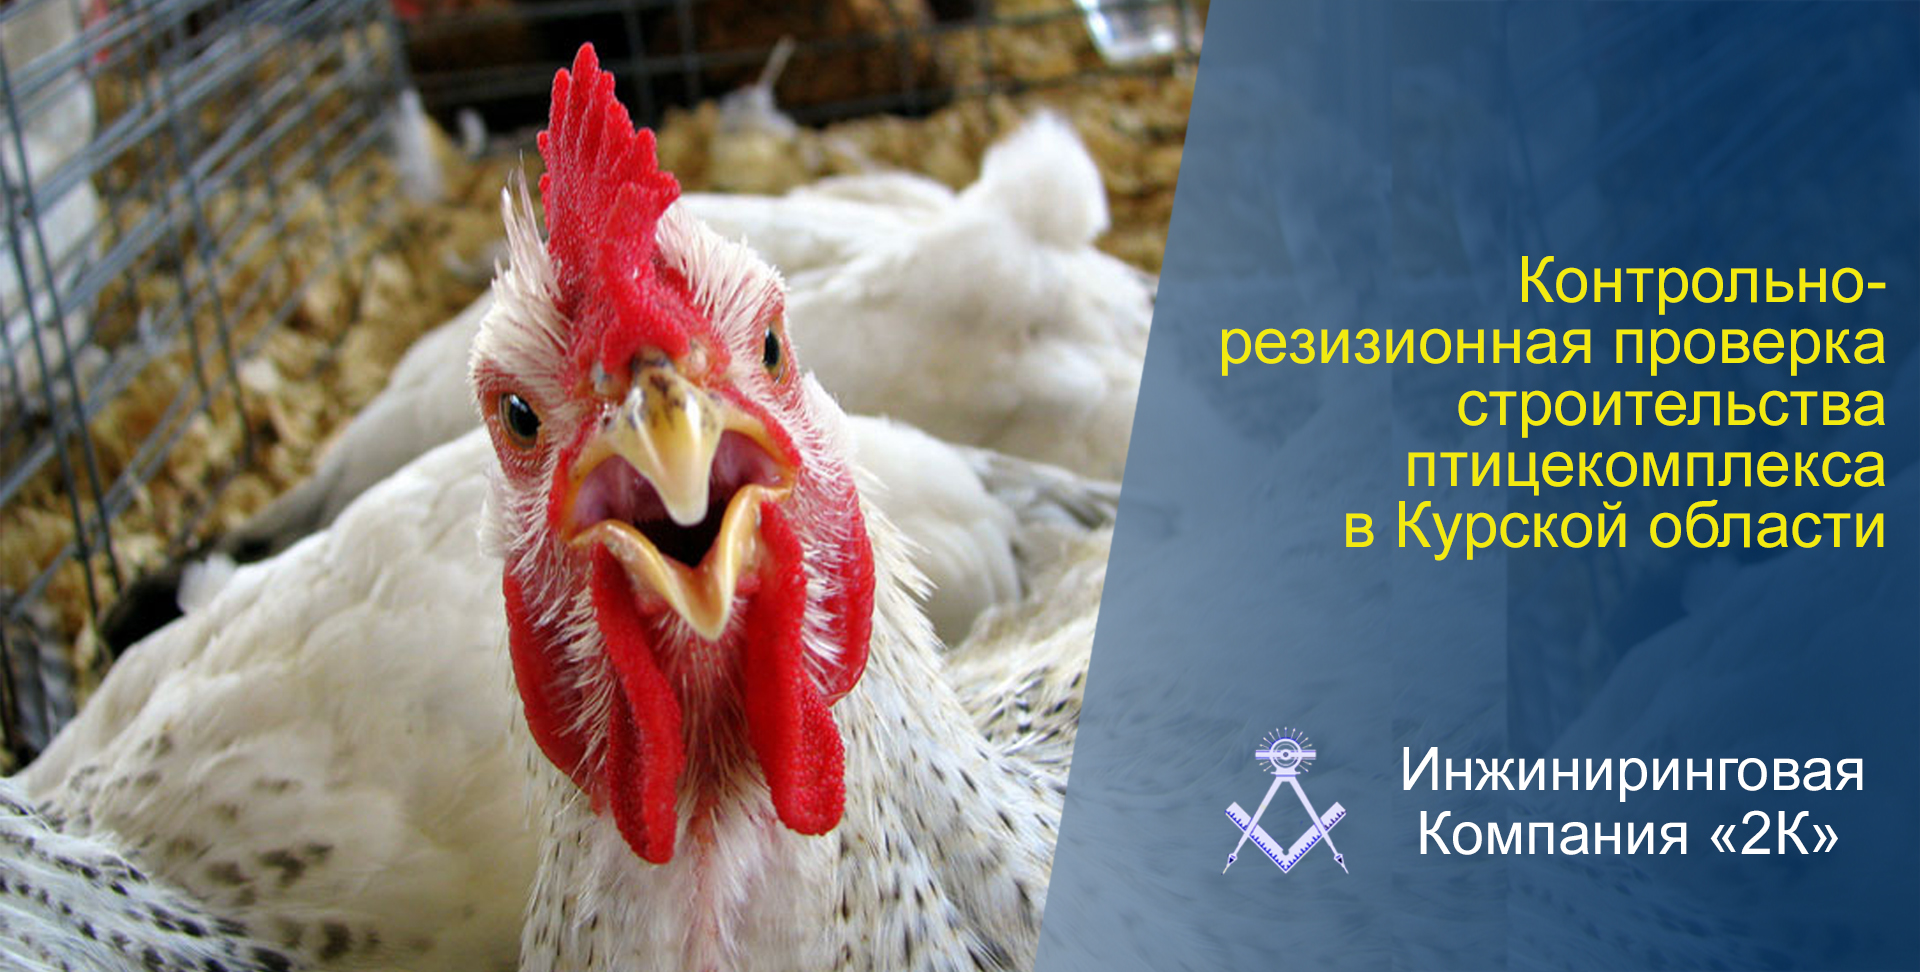 Контрольно-ревизионную проверку в рамках строительства птицекомплекса в Курской области